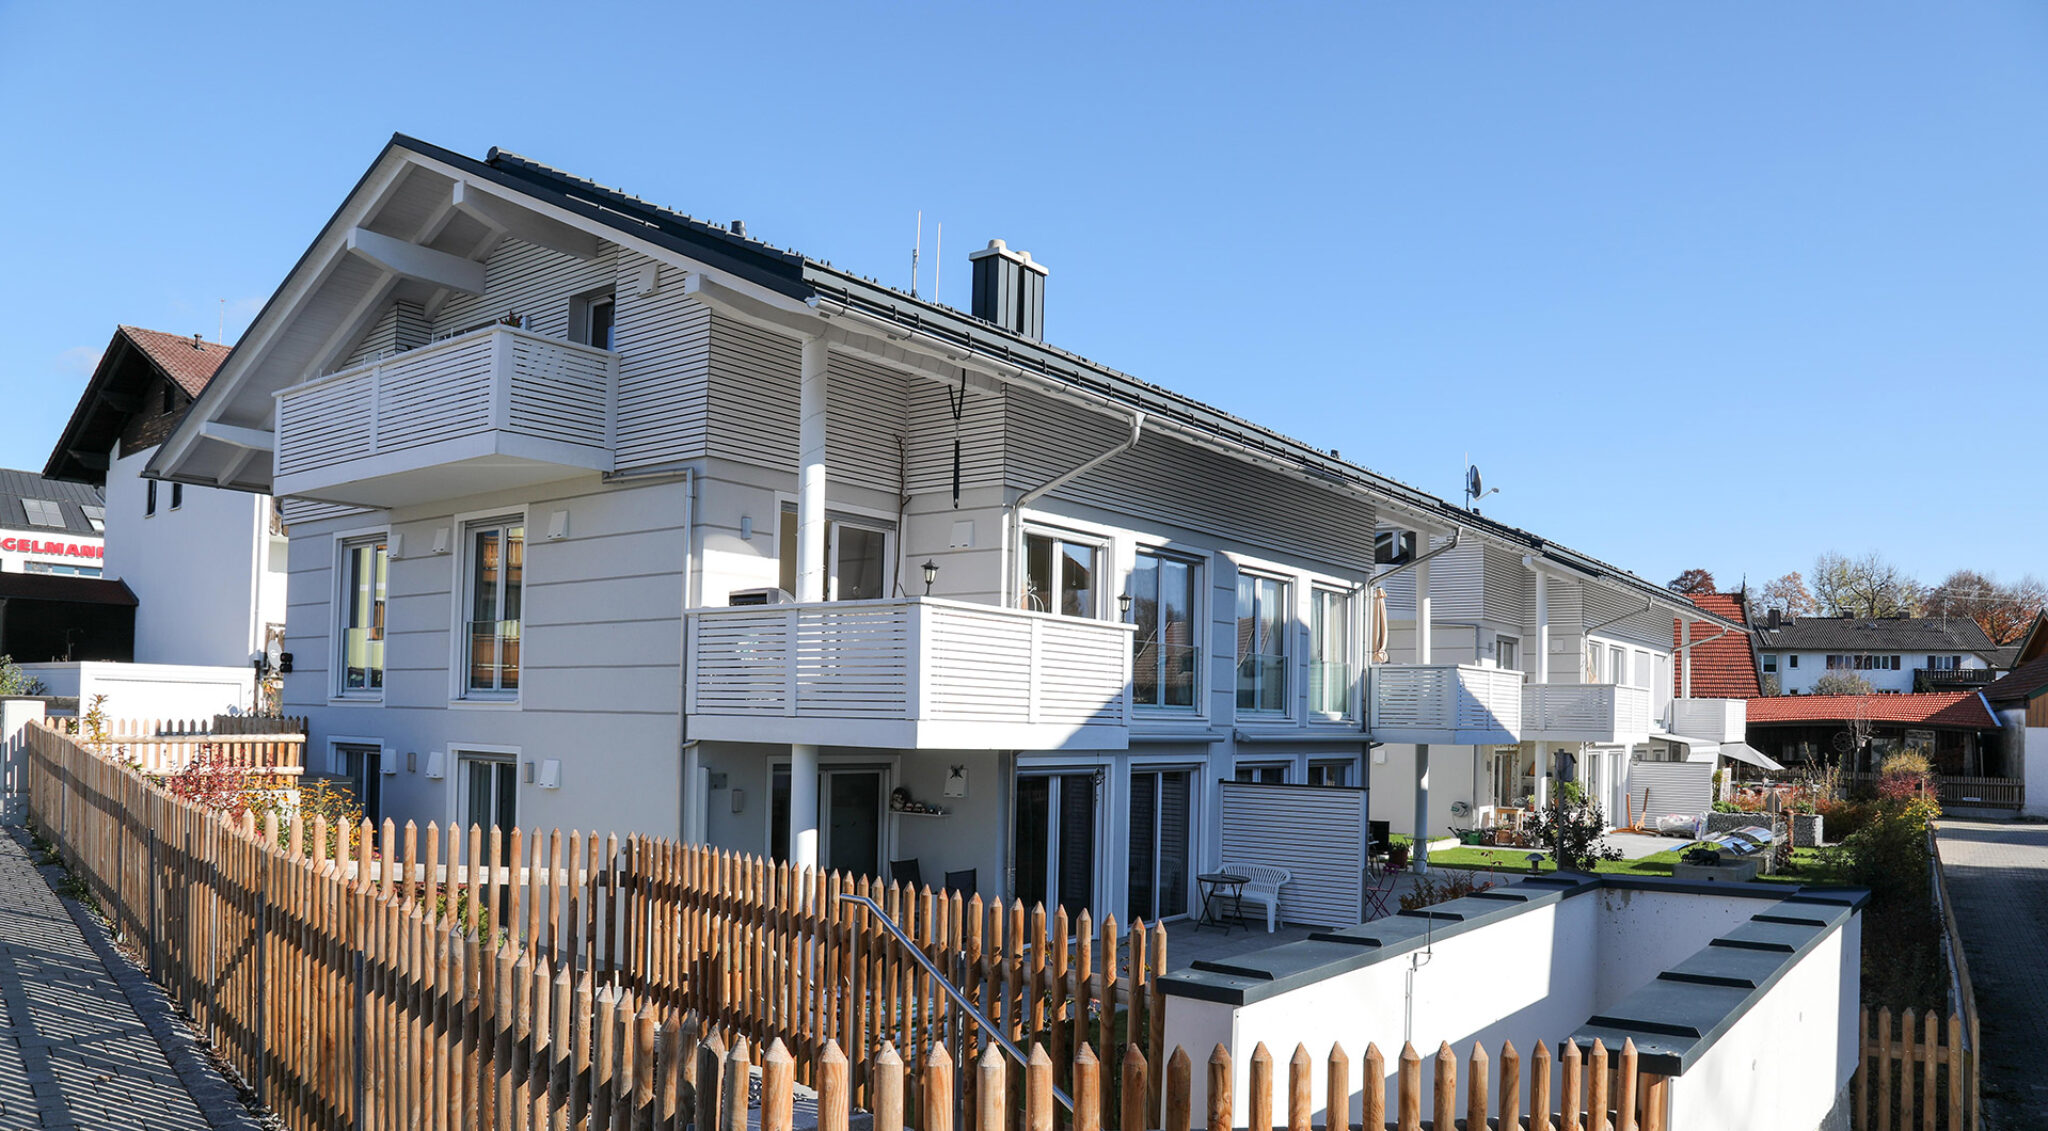 Grozügiges, helle Wohnhaus von WP-Projektbau in Murnau.